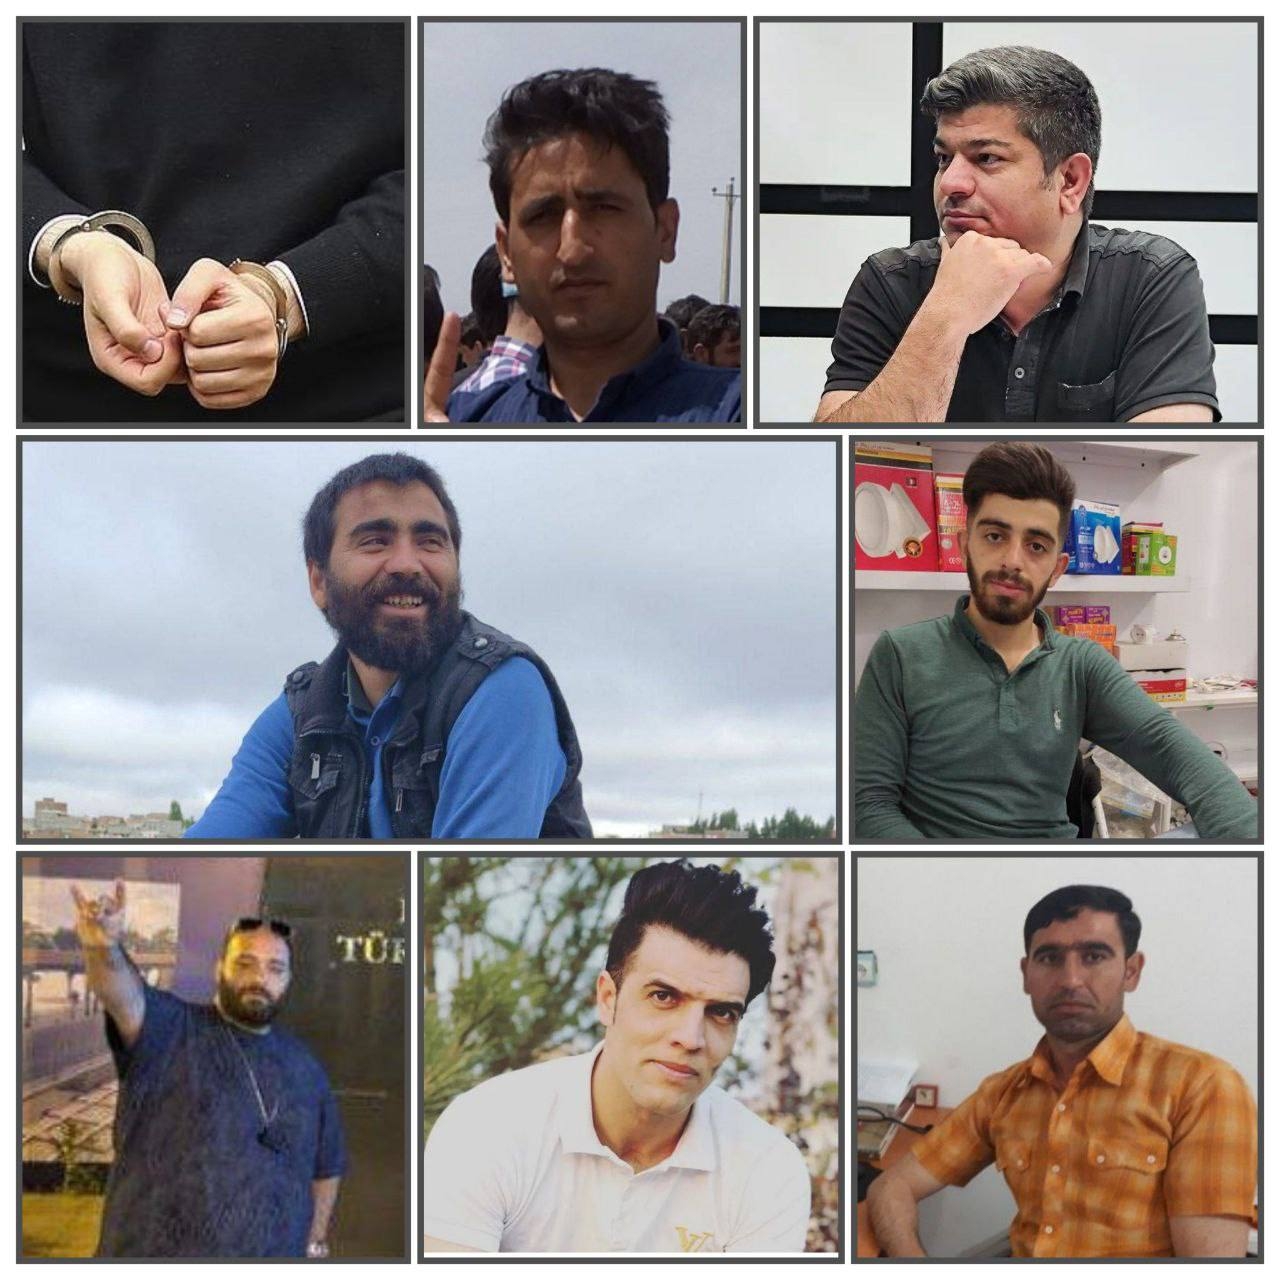 افزایش بازداشتی ها در آذربایجان؛ سعید جمالزاده در تبریز بازداشت شد